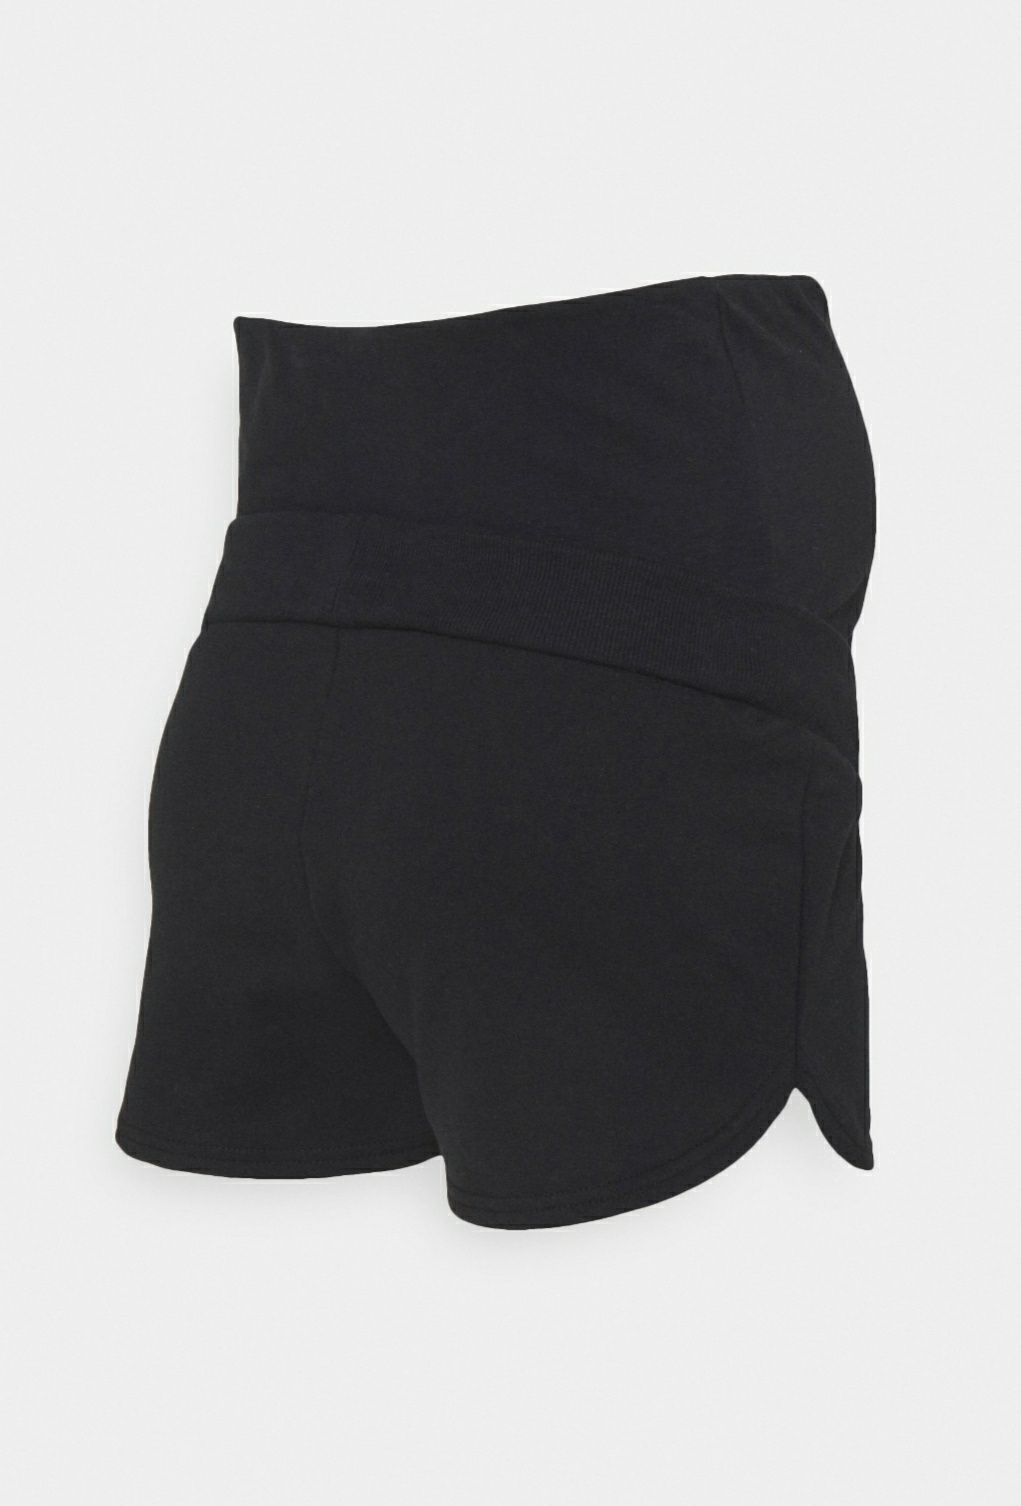 Spodenki ciążowe S NOWE czarne krótkie szorty spodnie 36